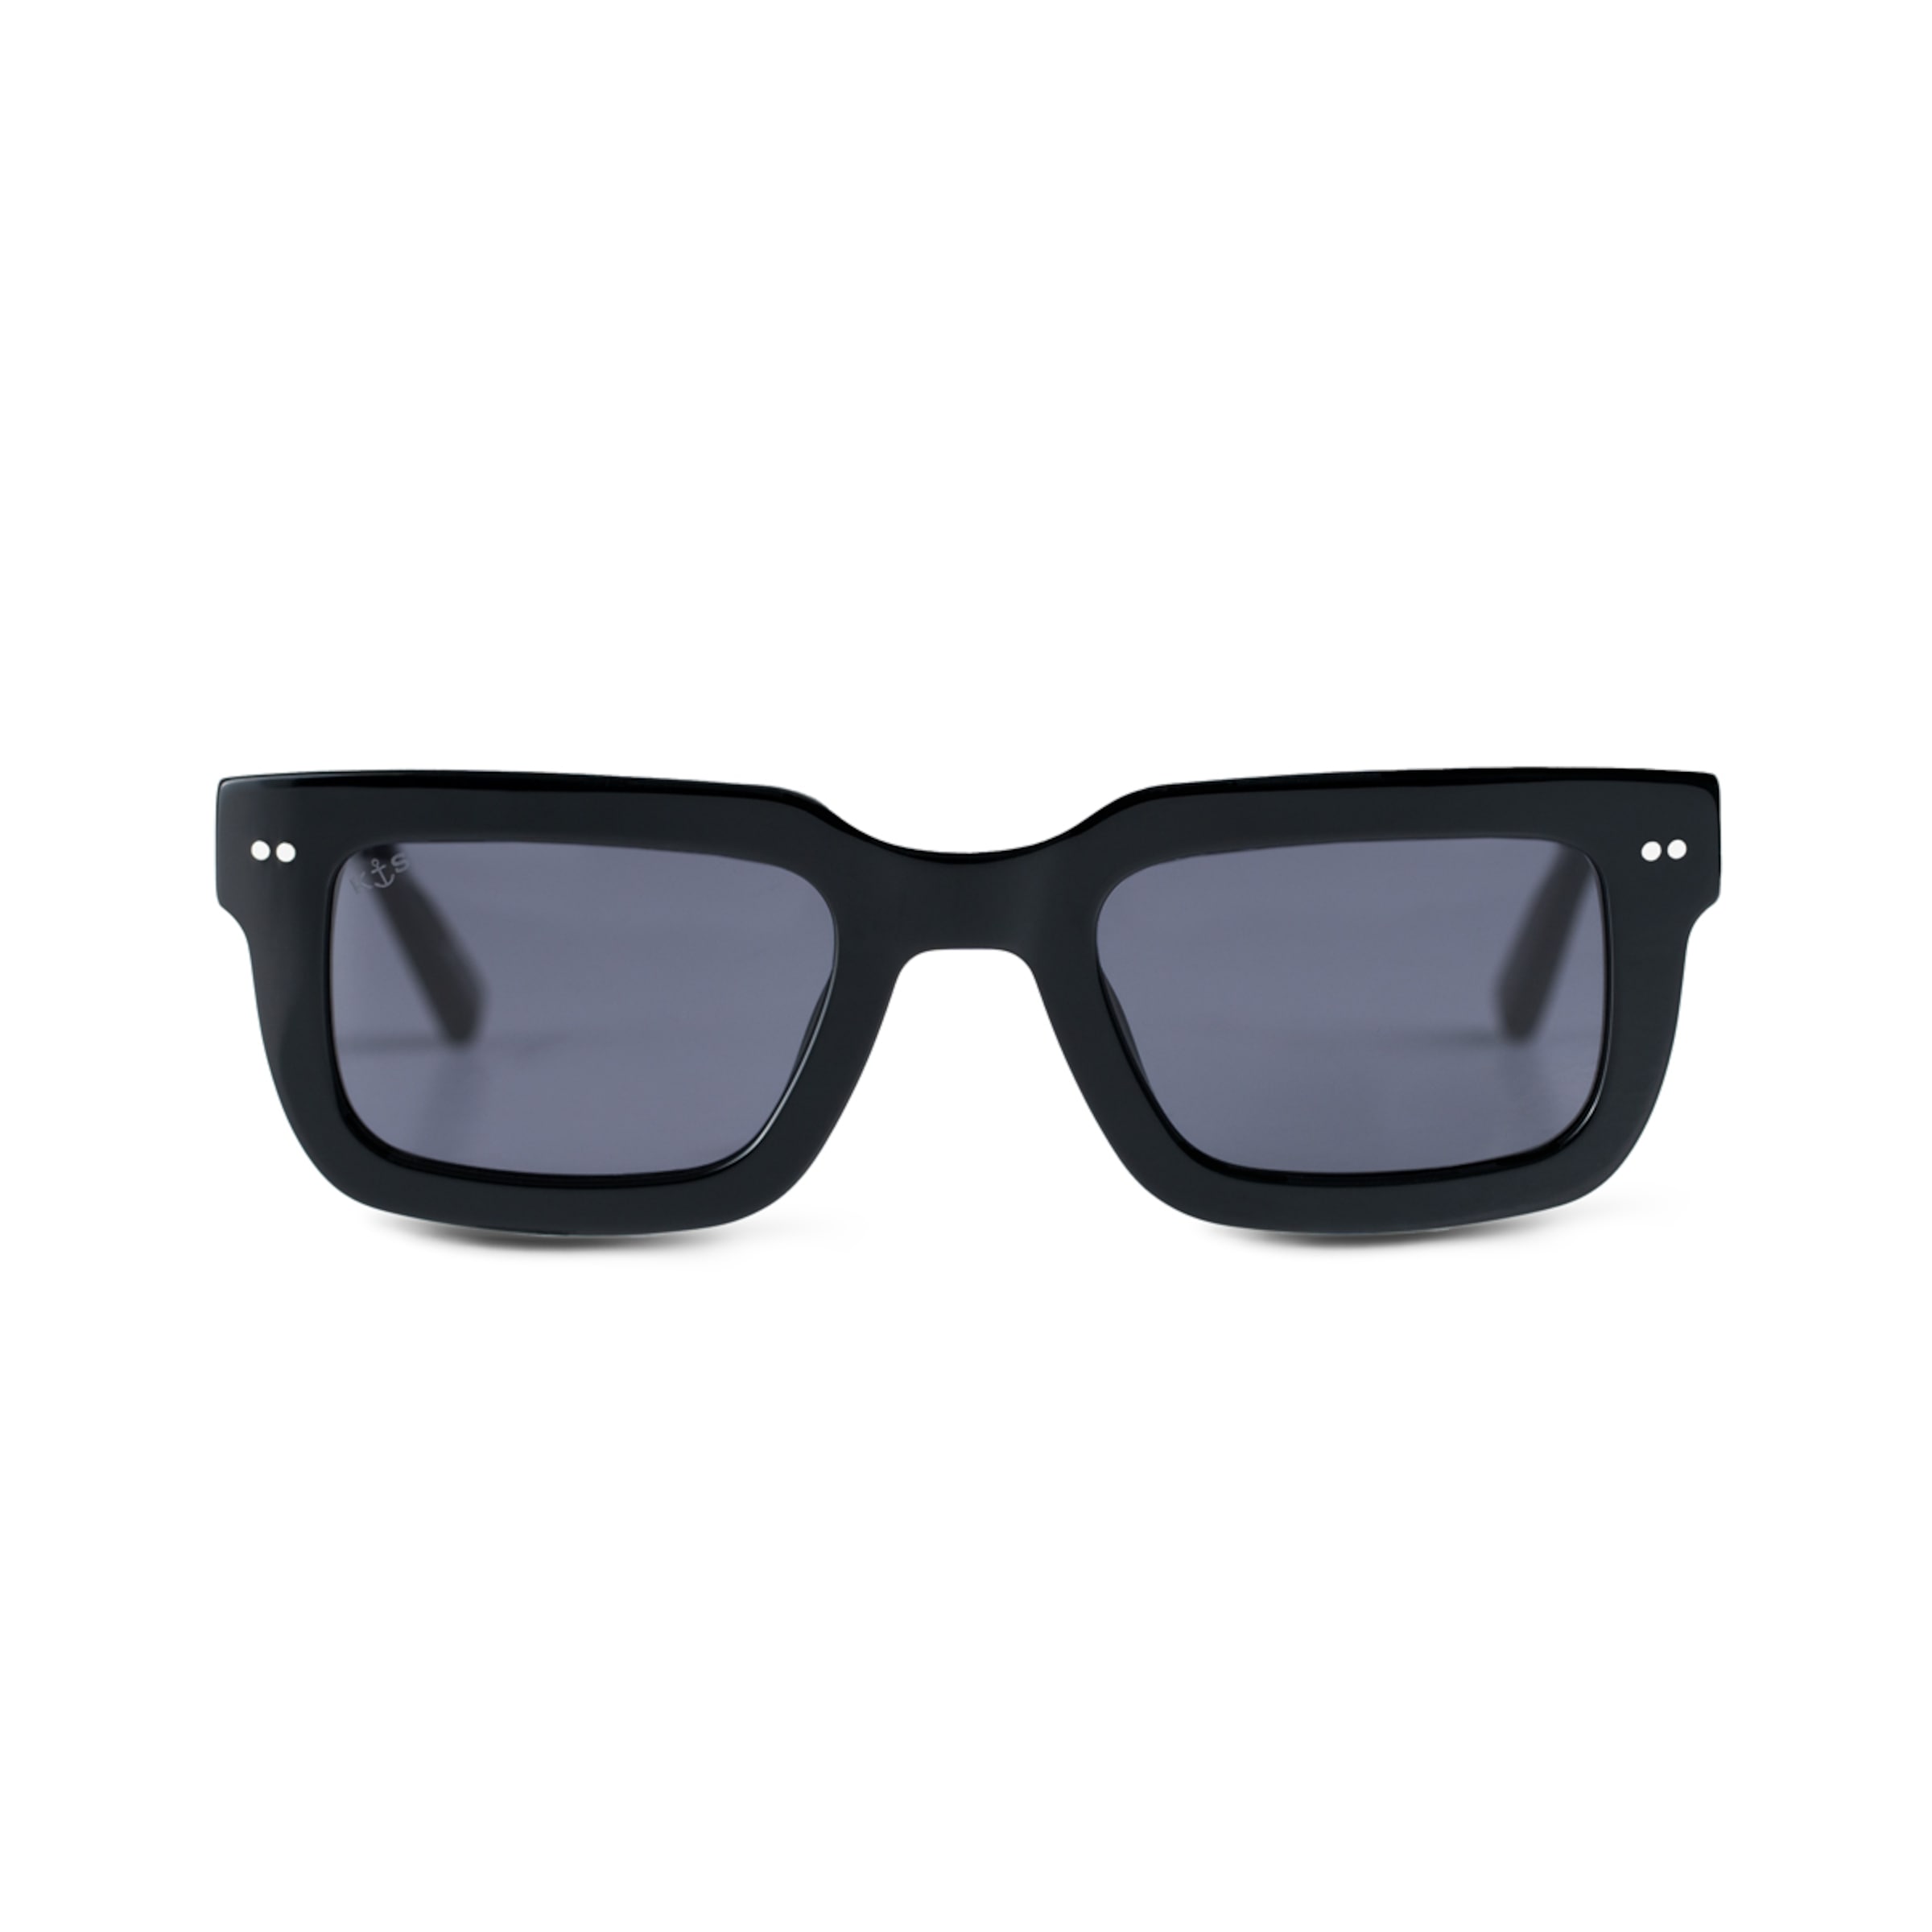 Kleine Stilkunde - XXL-Sonnenbrillen sind mega-out!, Leben & Wissen